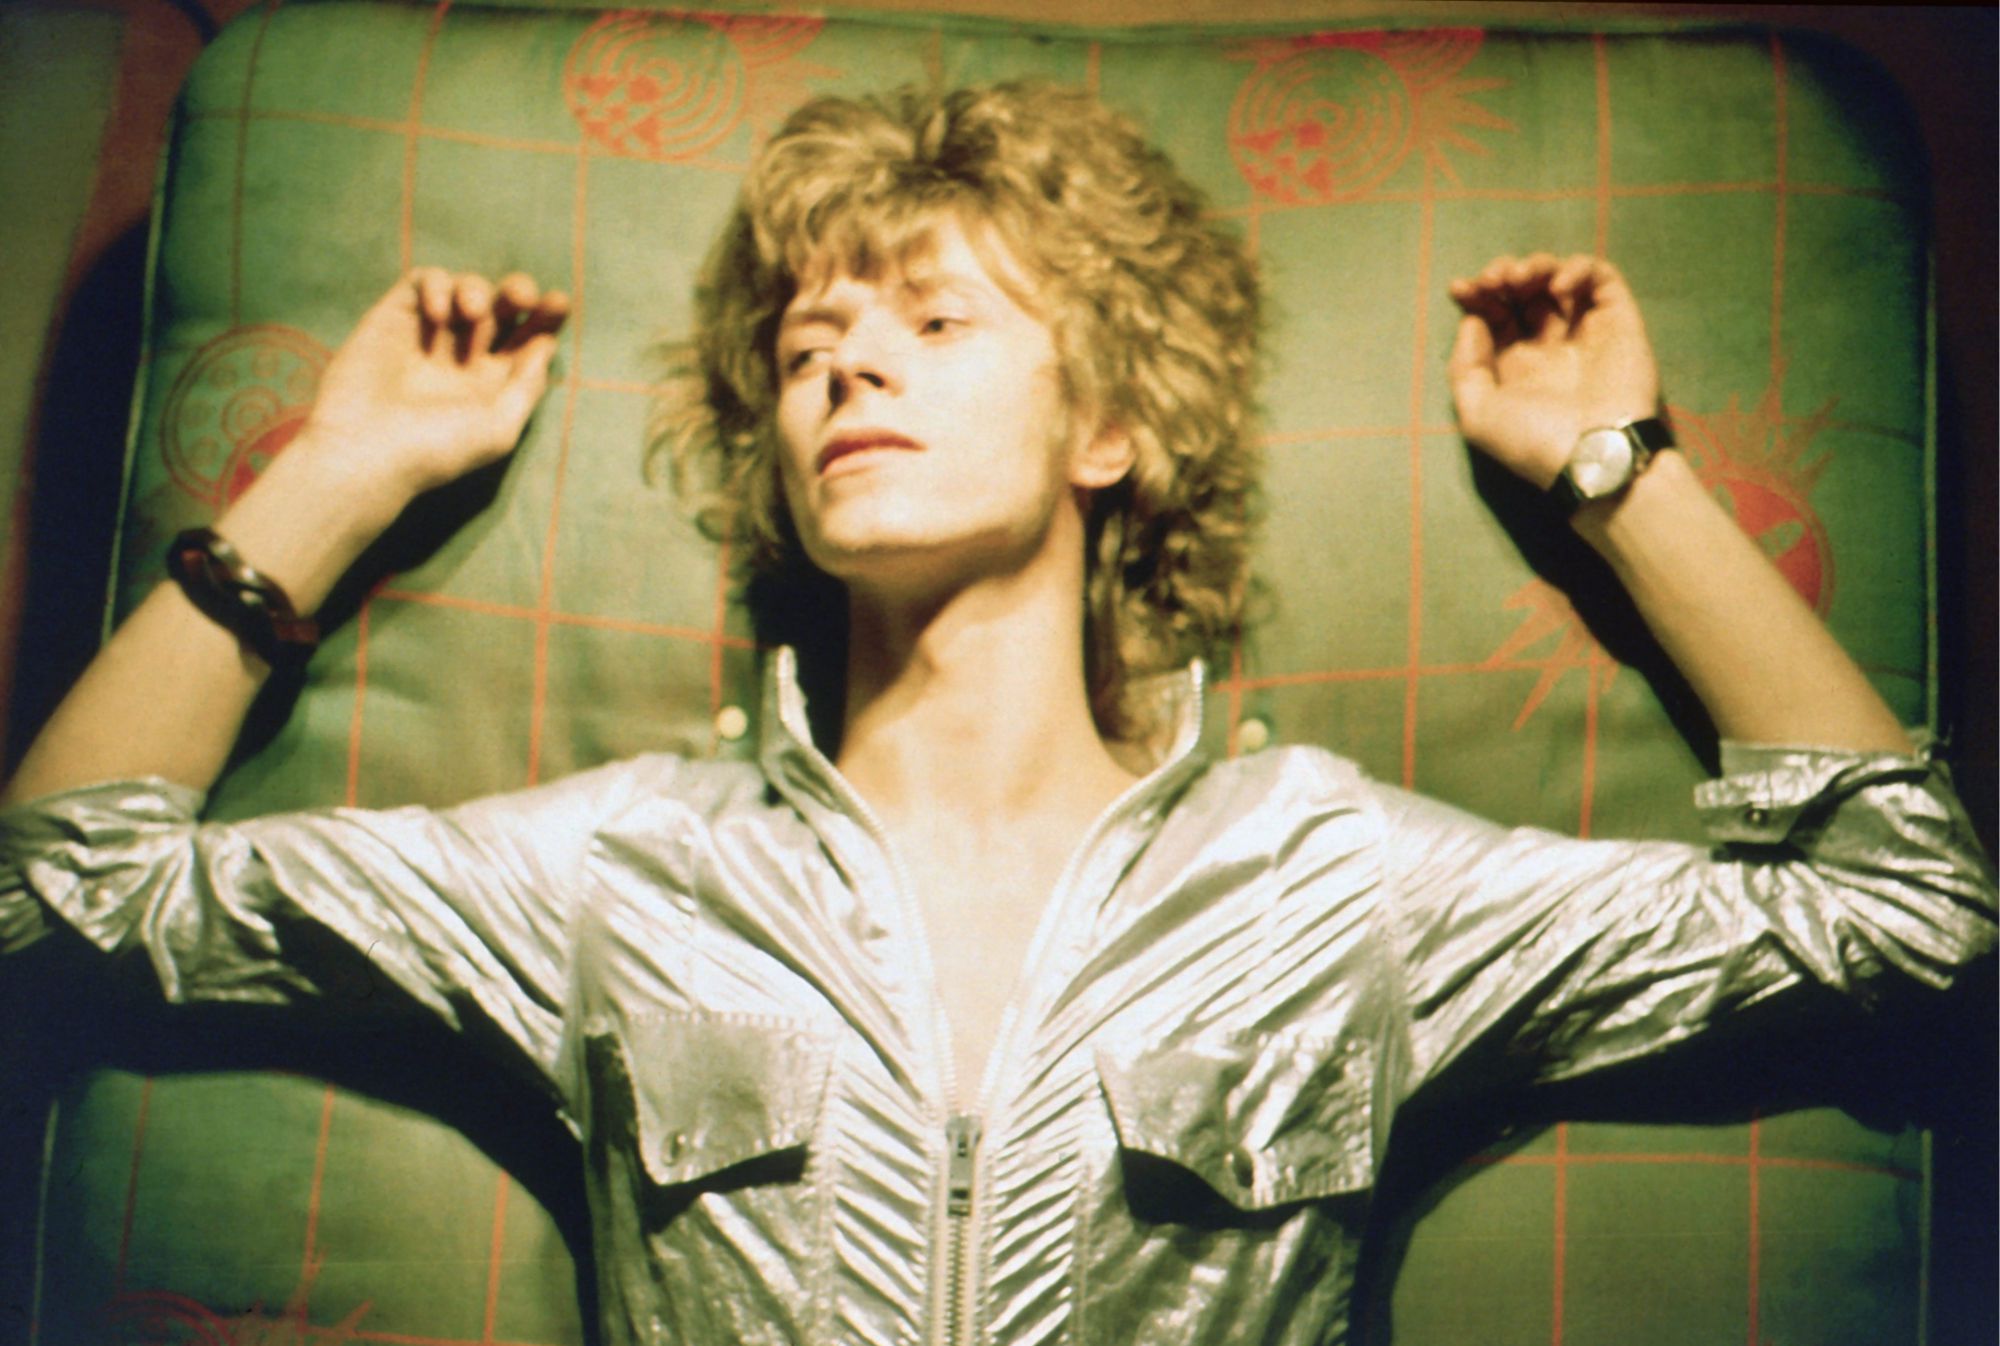 David Bowie en 1969